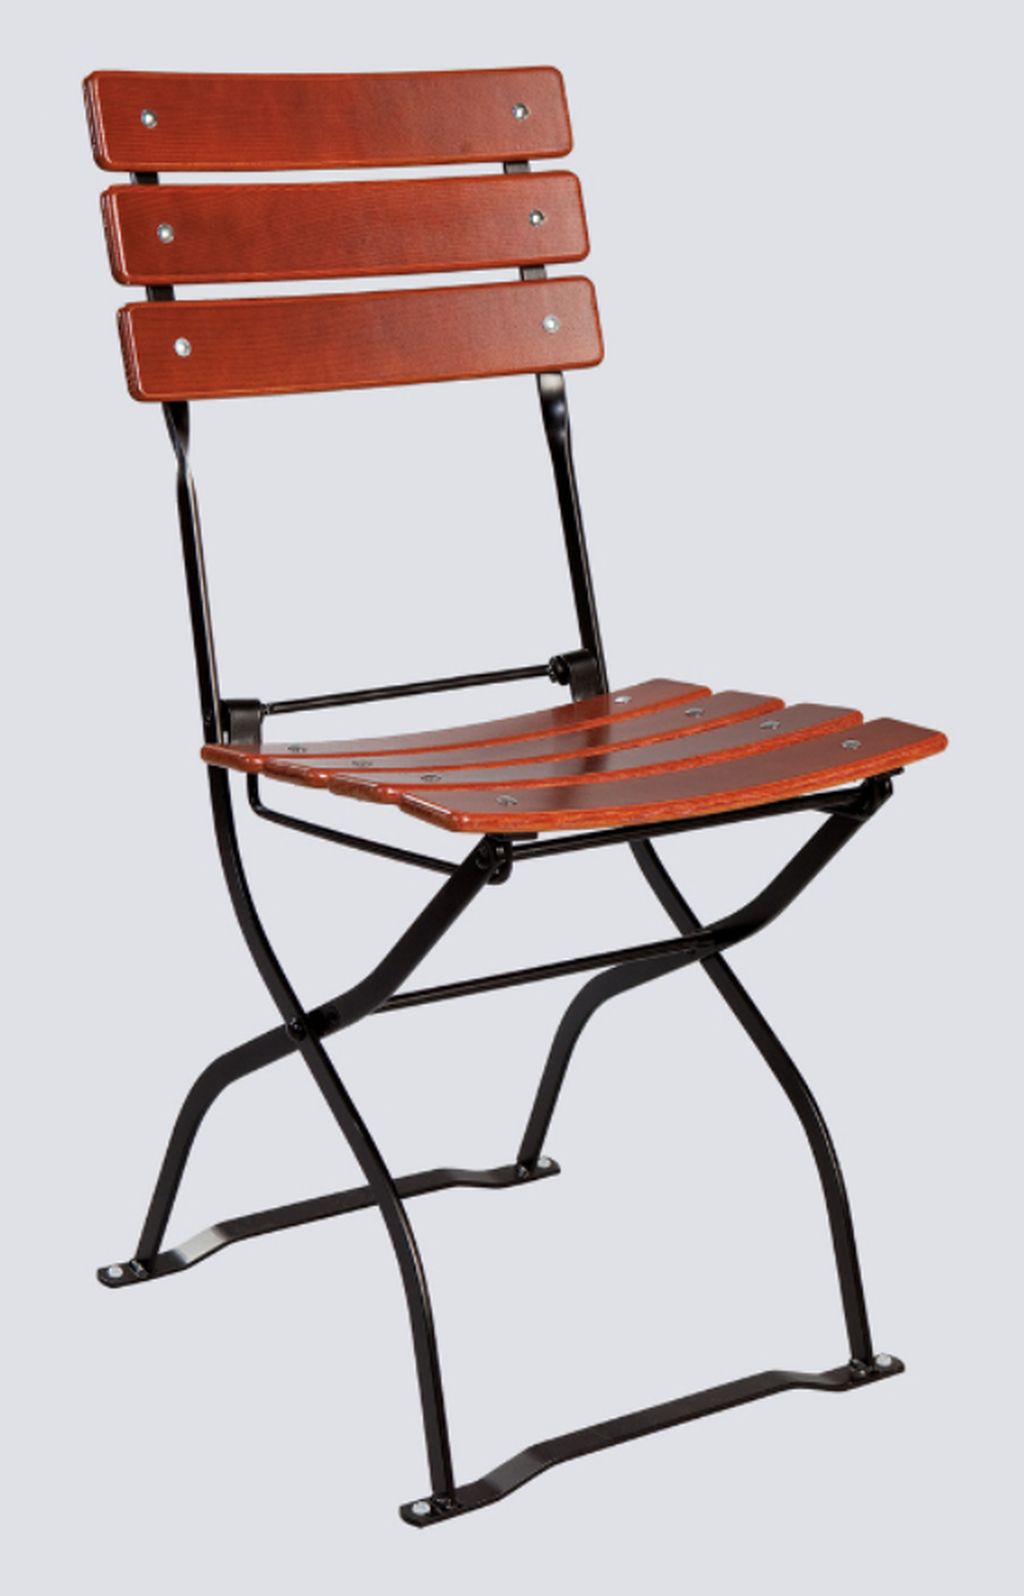 Zahradní židle Arnika jasan skládací, formovaný sedák - 3 opěrky ((3 opěrky))